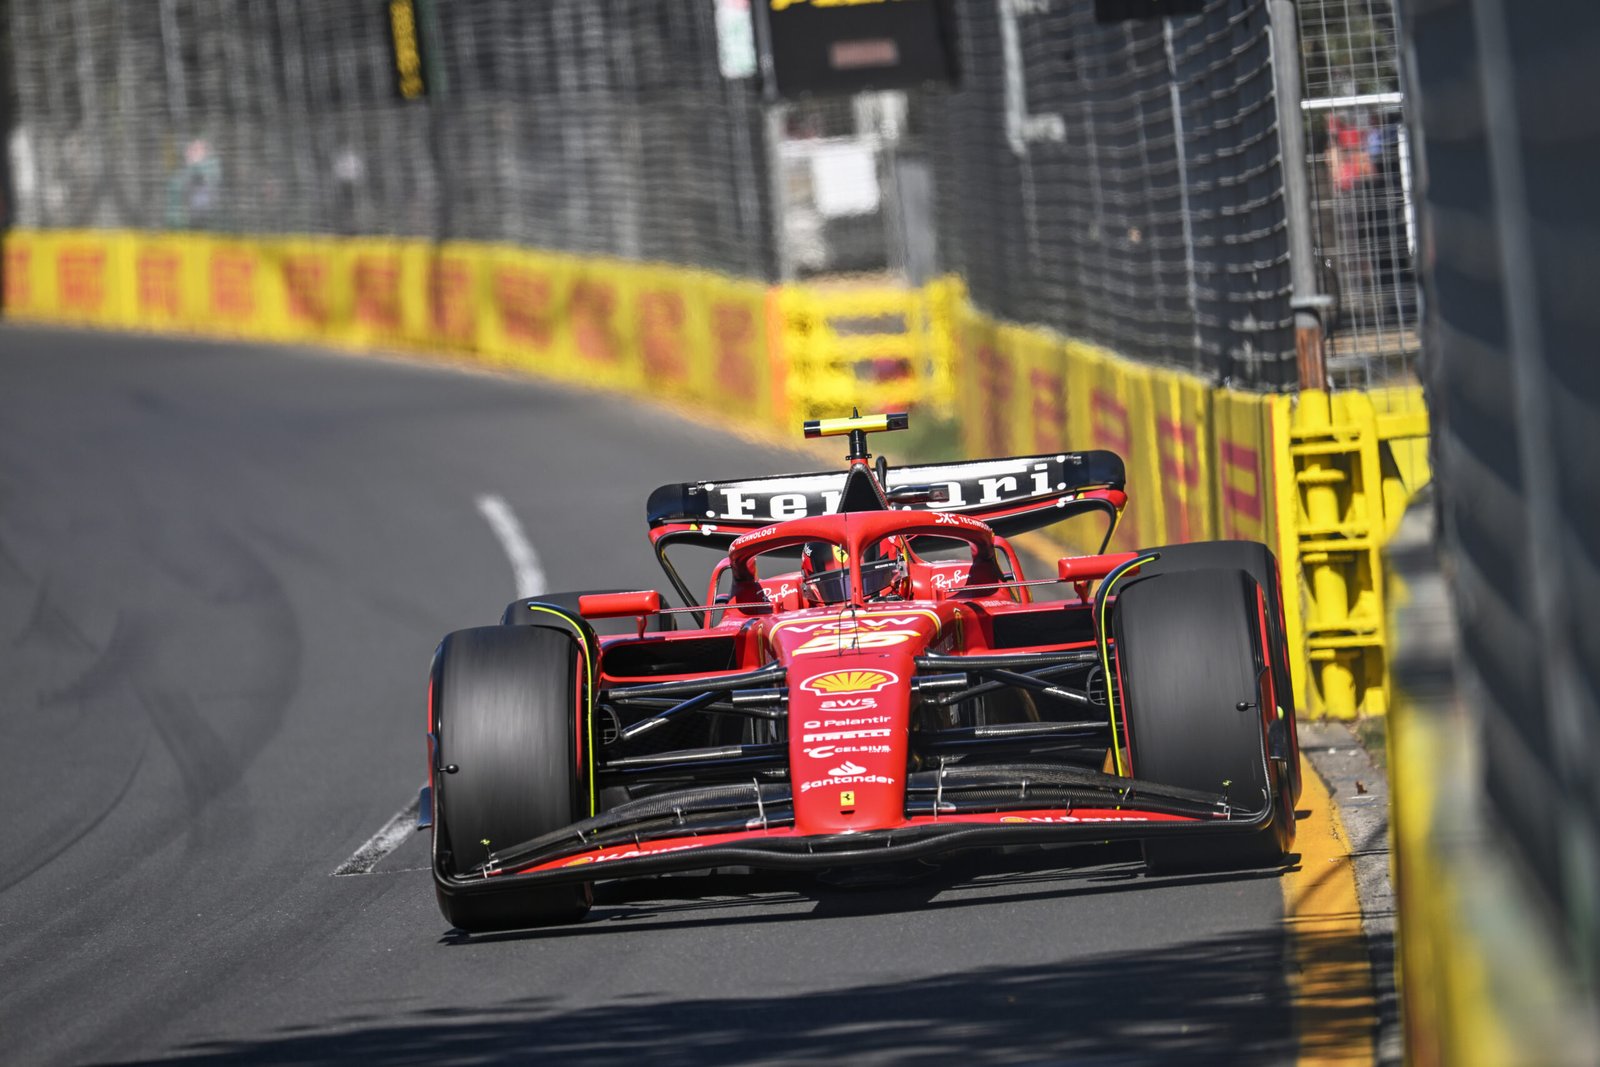 Pirelli acerta com escolha de pneus para o GP da Austrália. Sainz fatura vitória